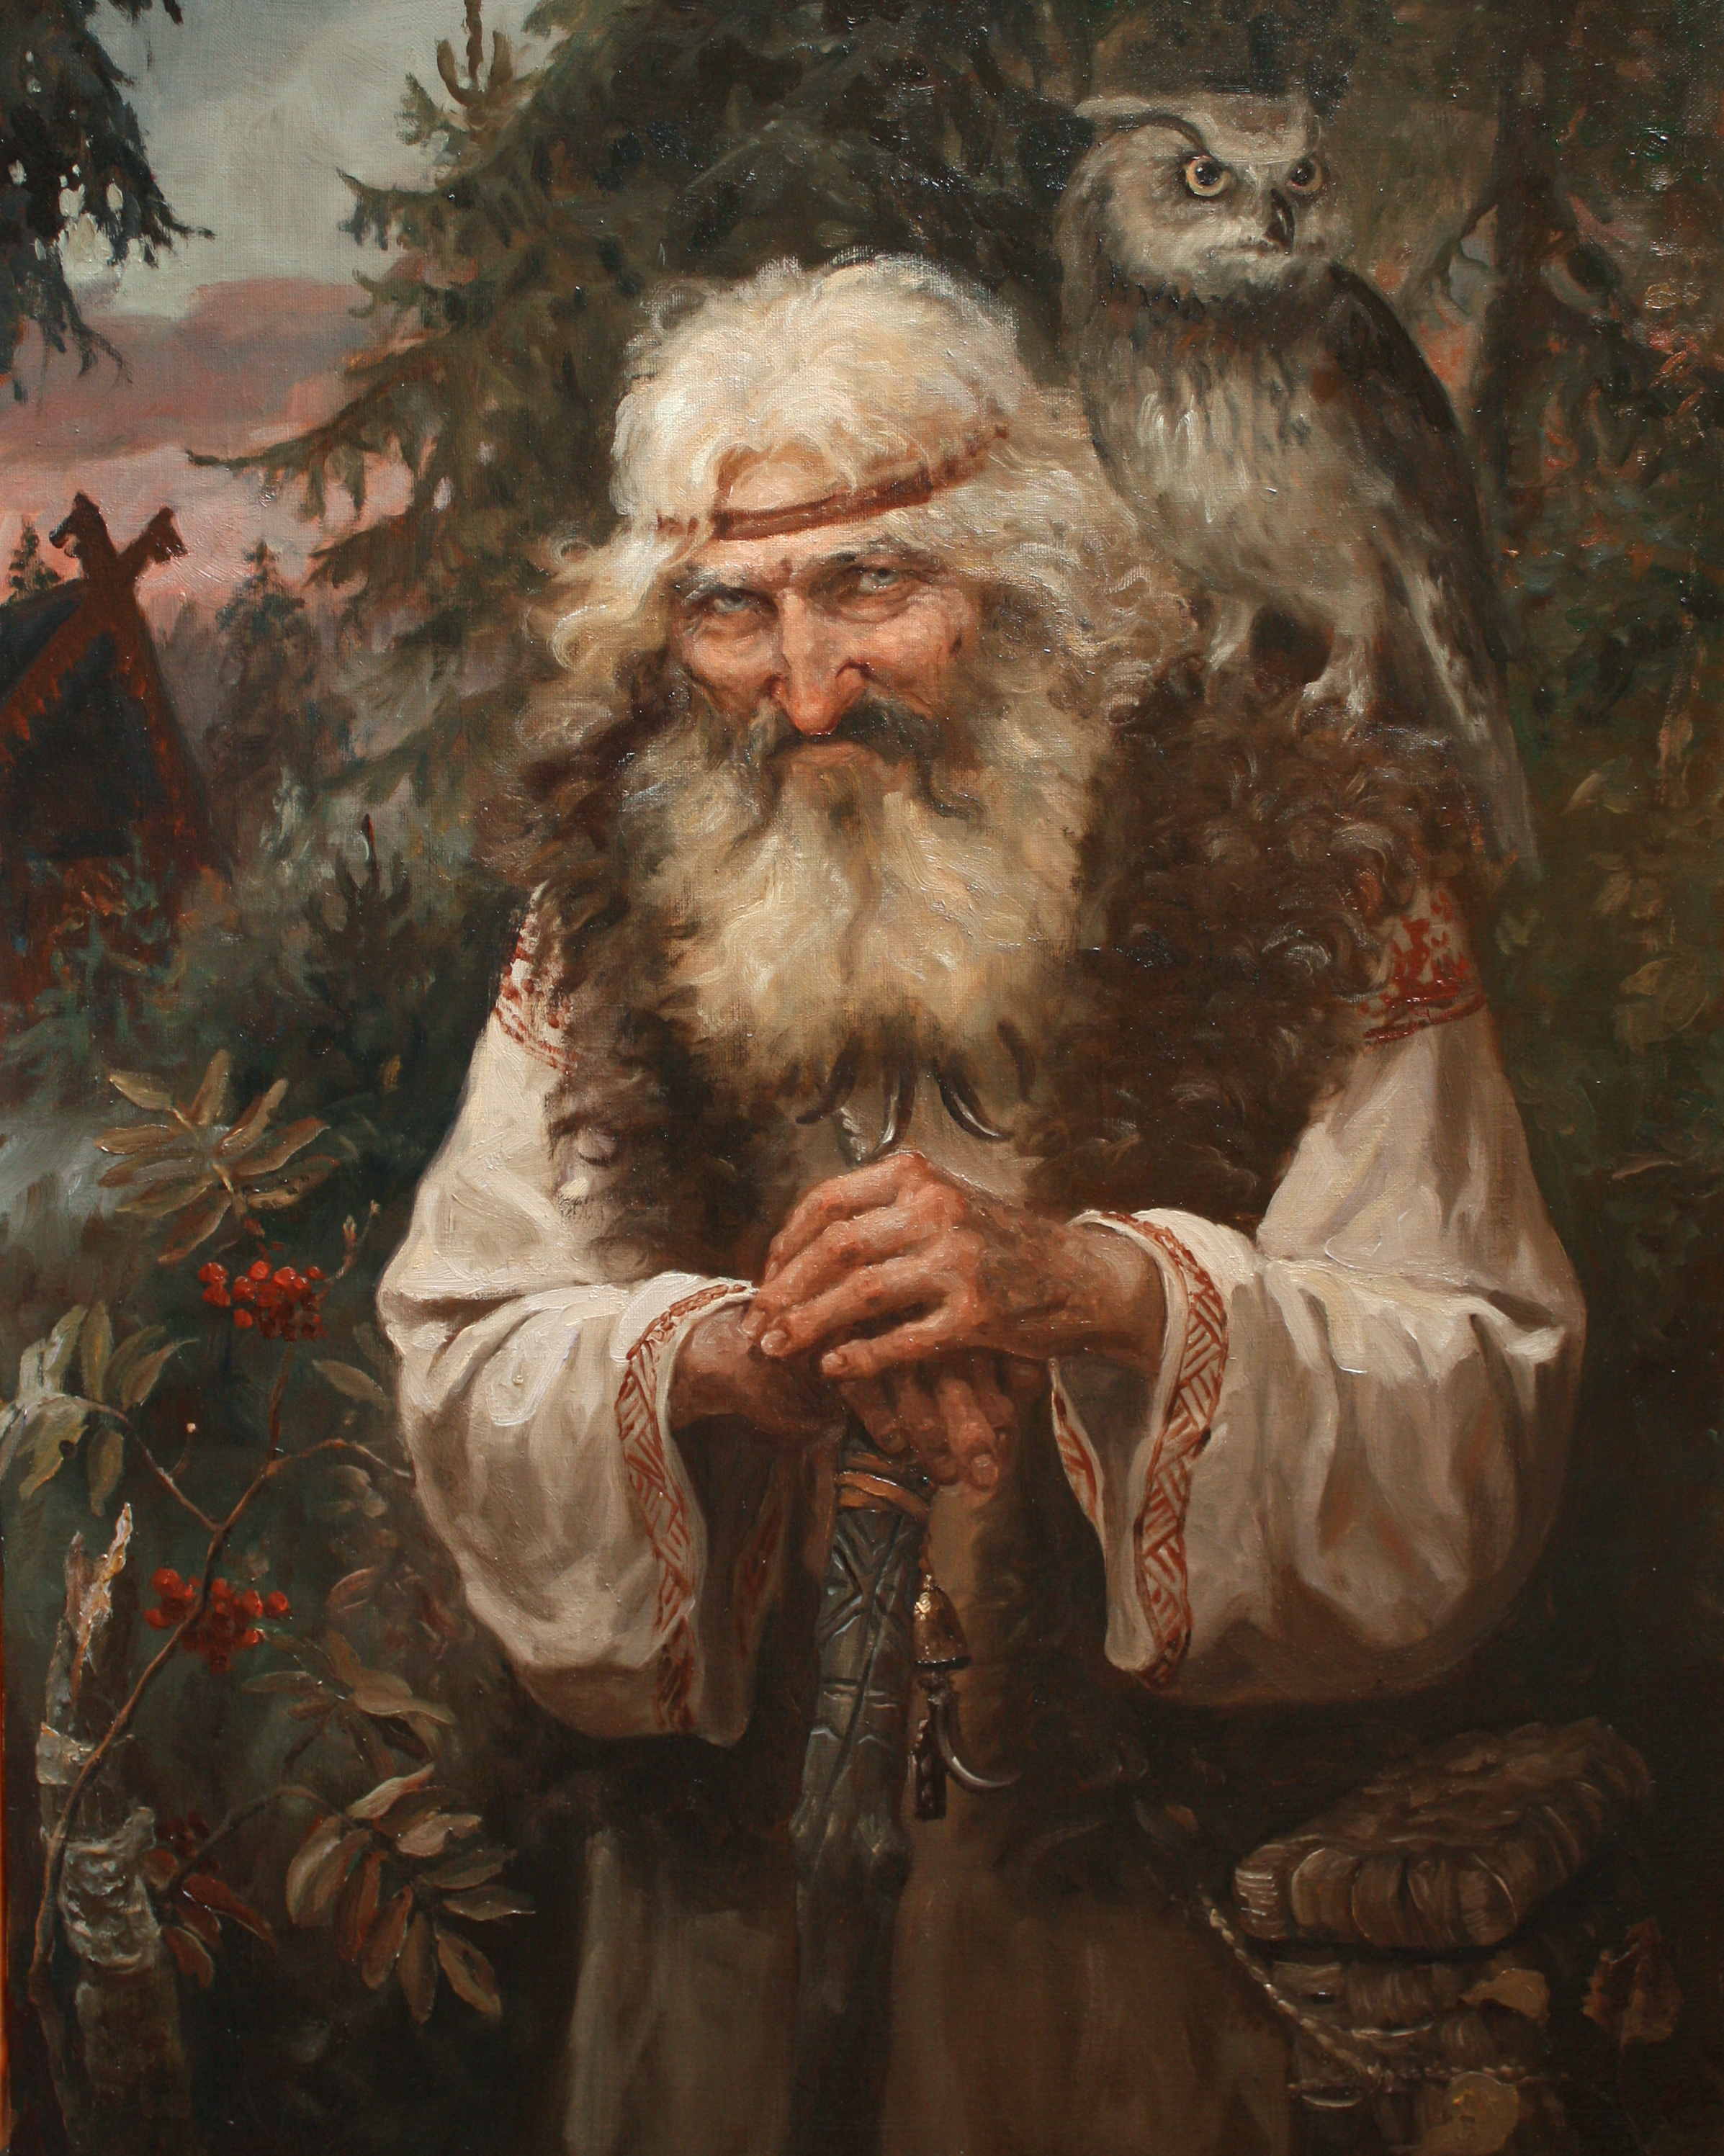 Леший - славянский дух леса; В глуши лесной